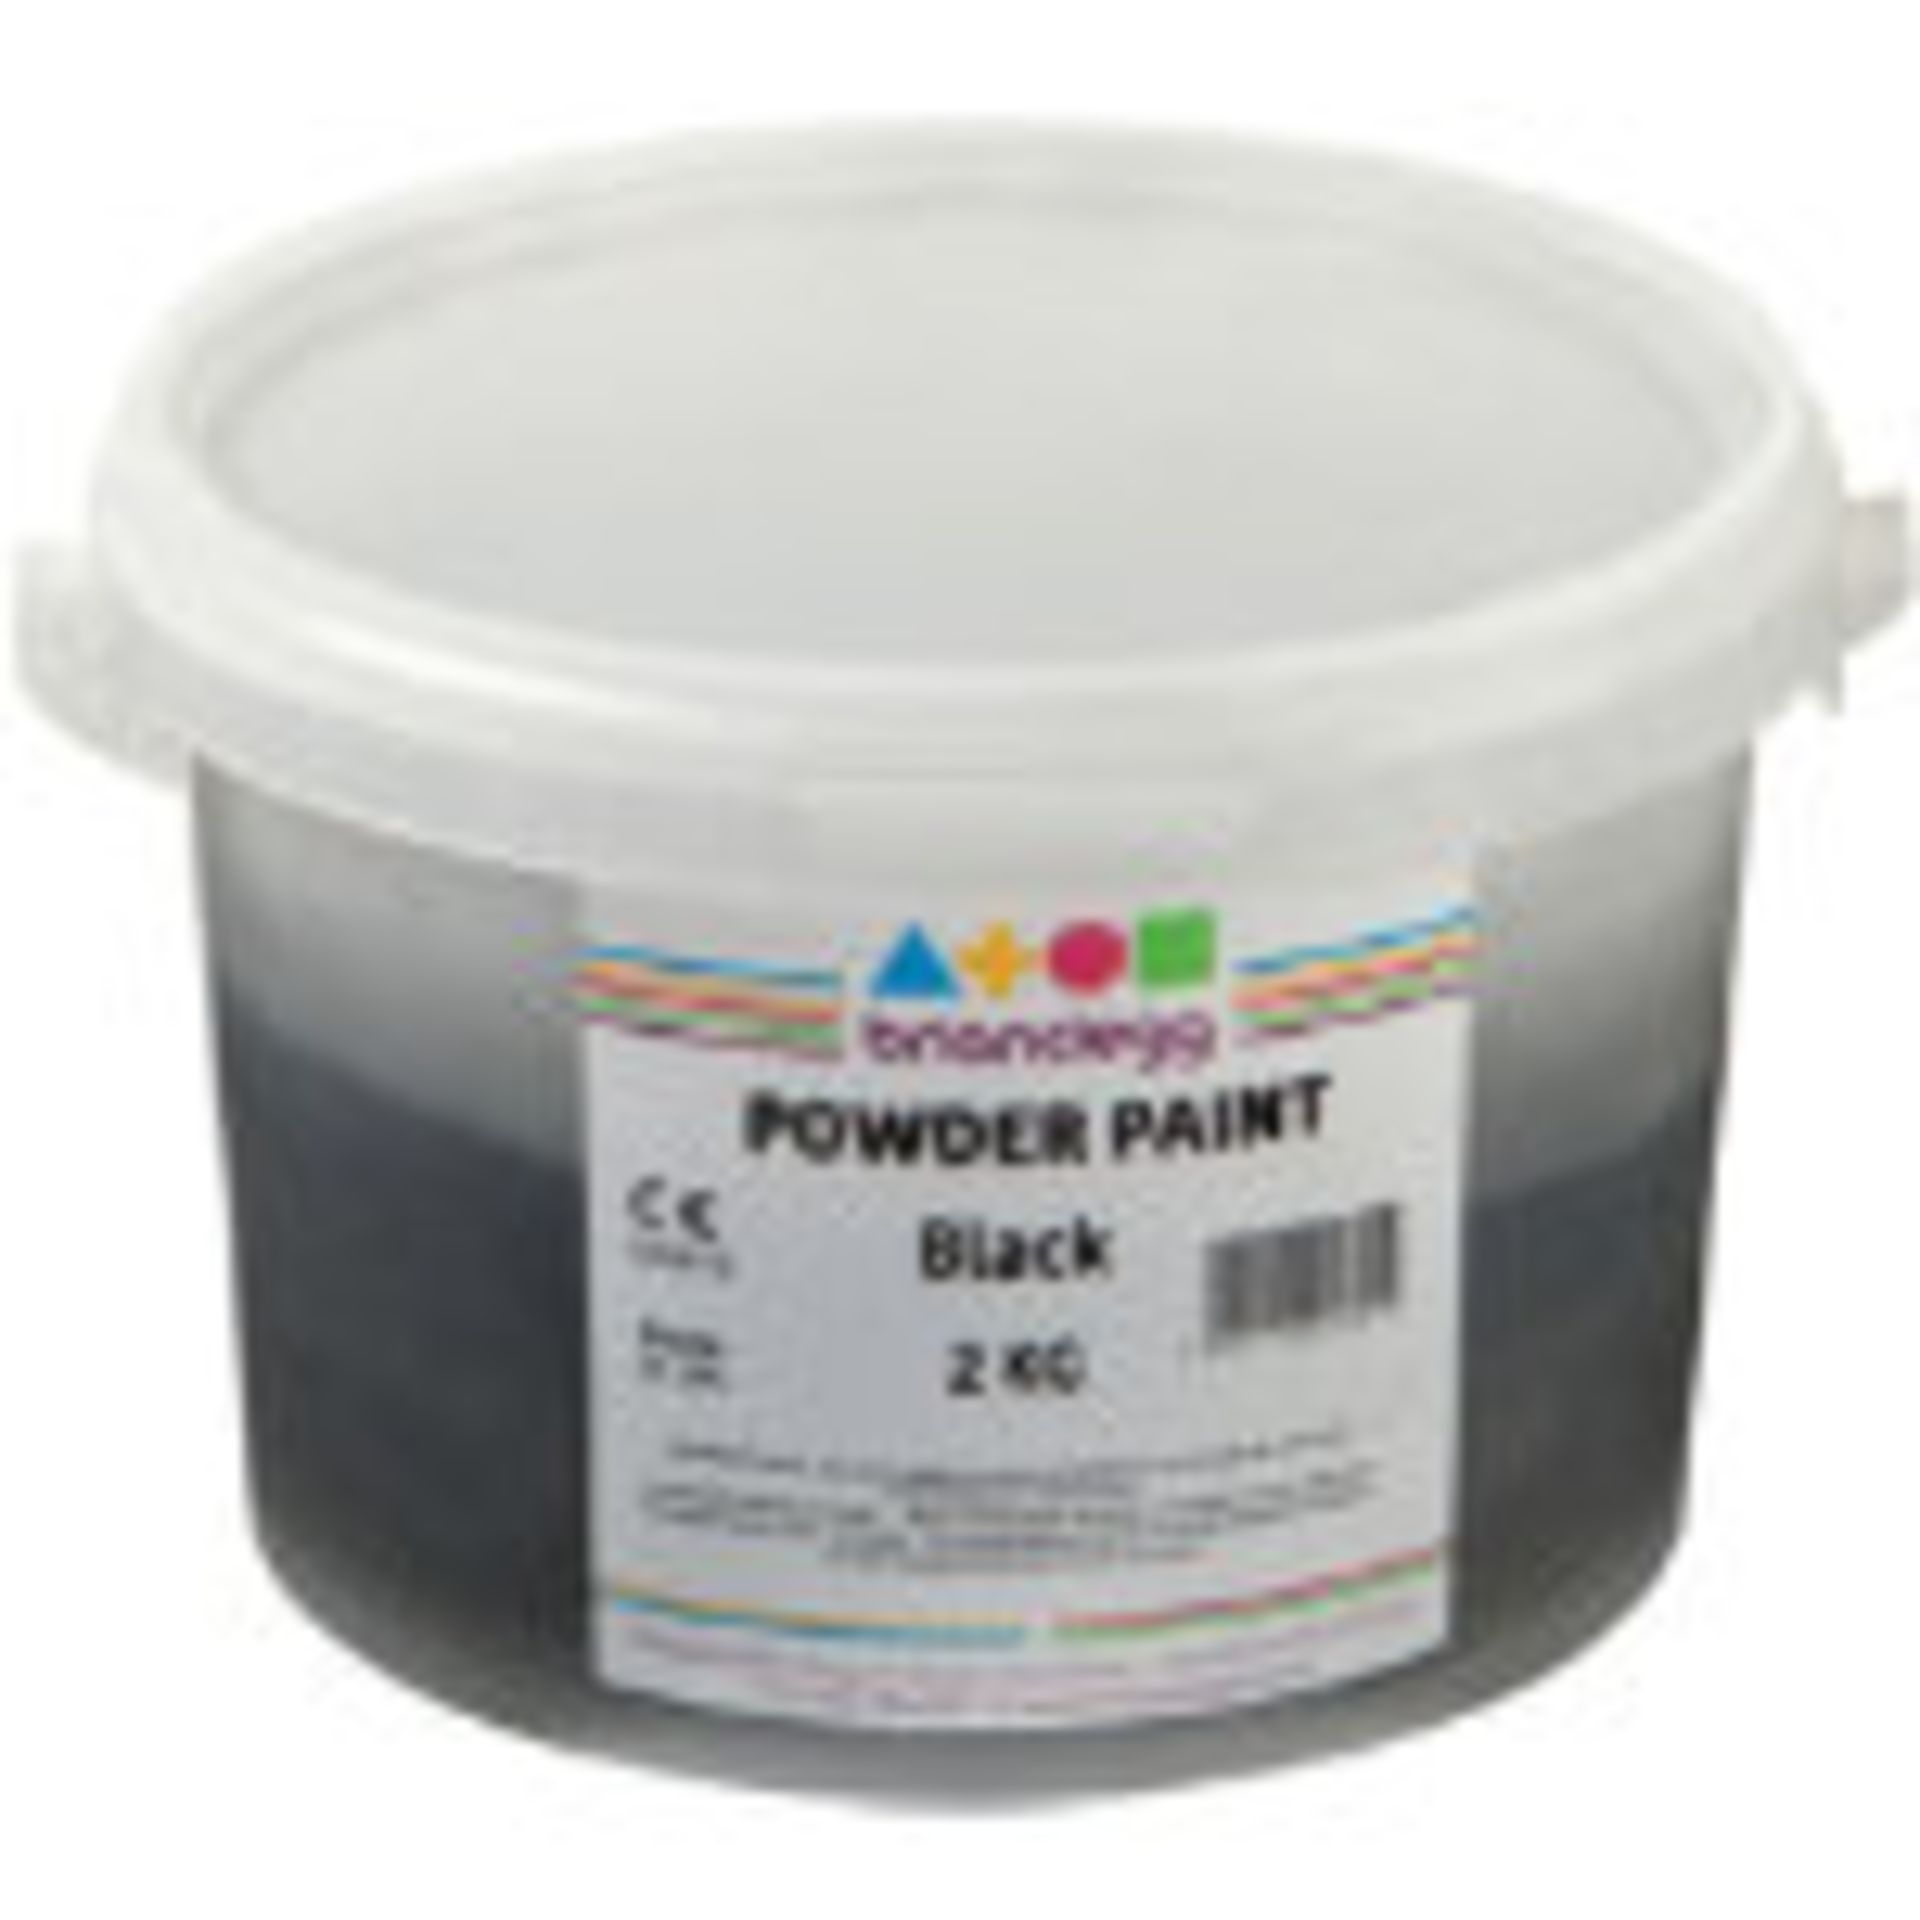 V Grade U 9kg Tub Brian Glegg Powder Paint Green Suitable For Schools Nurseries Etc X 2 Bid price to